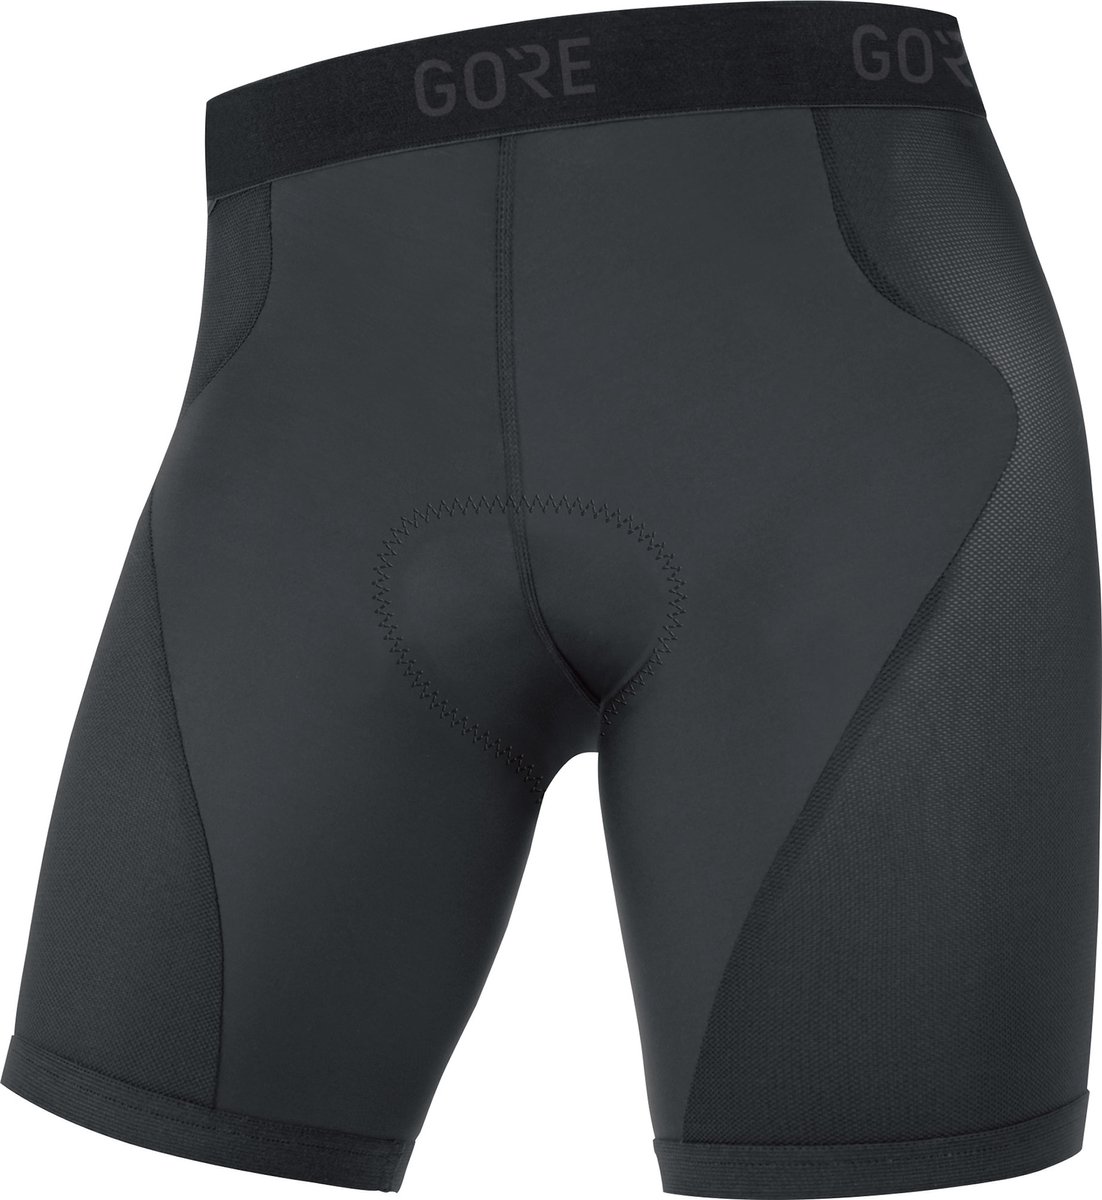 Gorewear Gore C3 + Liner Korte Fietsbroek Zwart